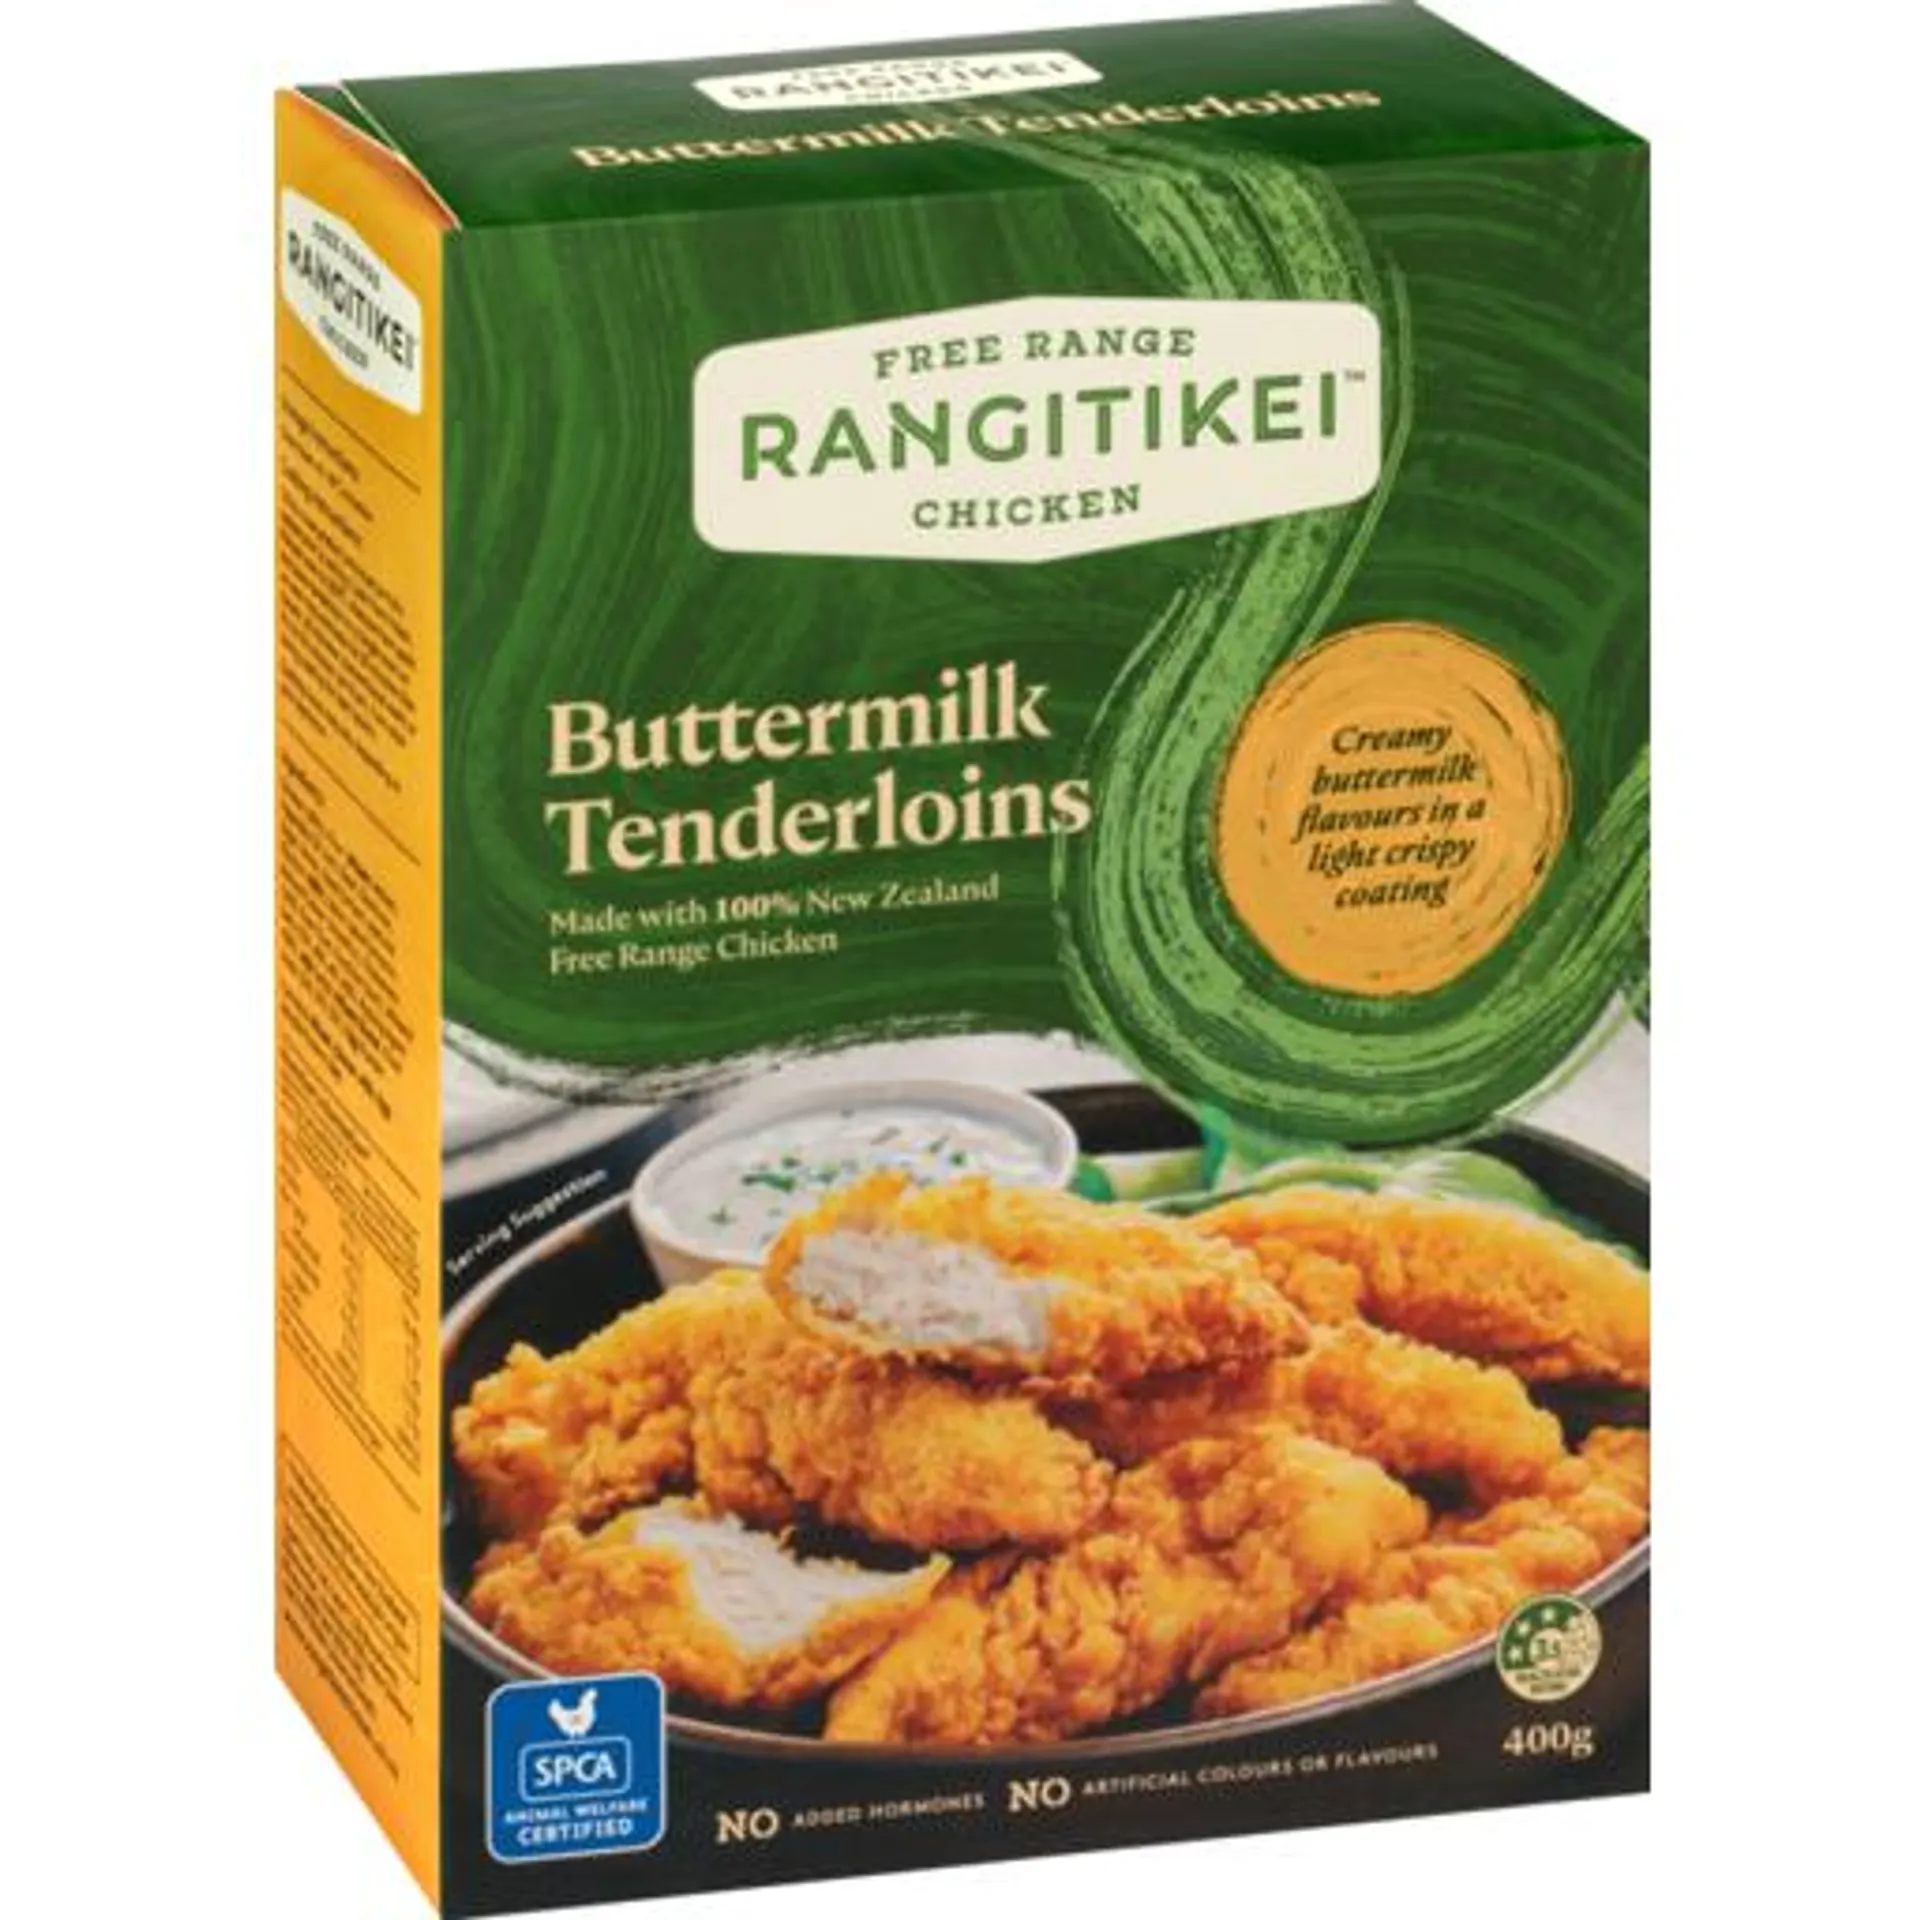 Rangitikei Free Range Chicken Tenderloins Buttermilk 400g